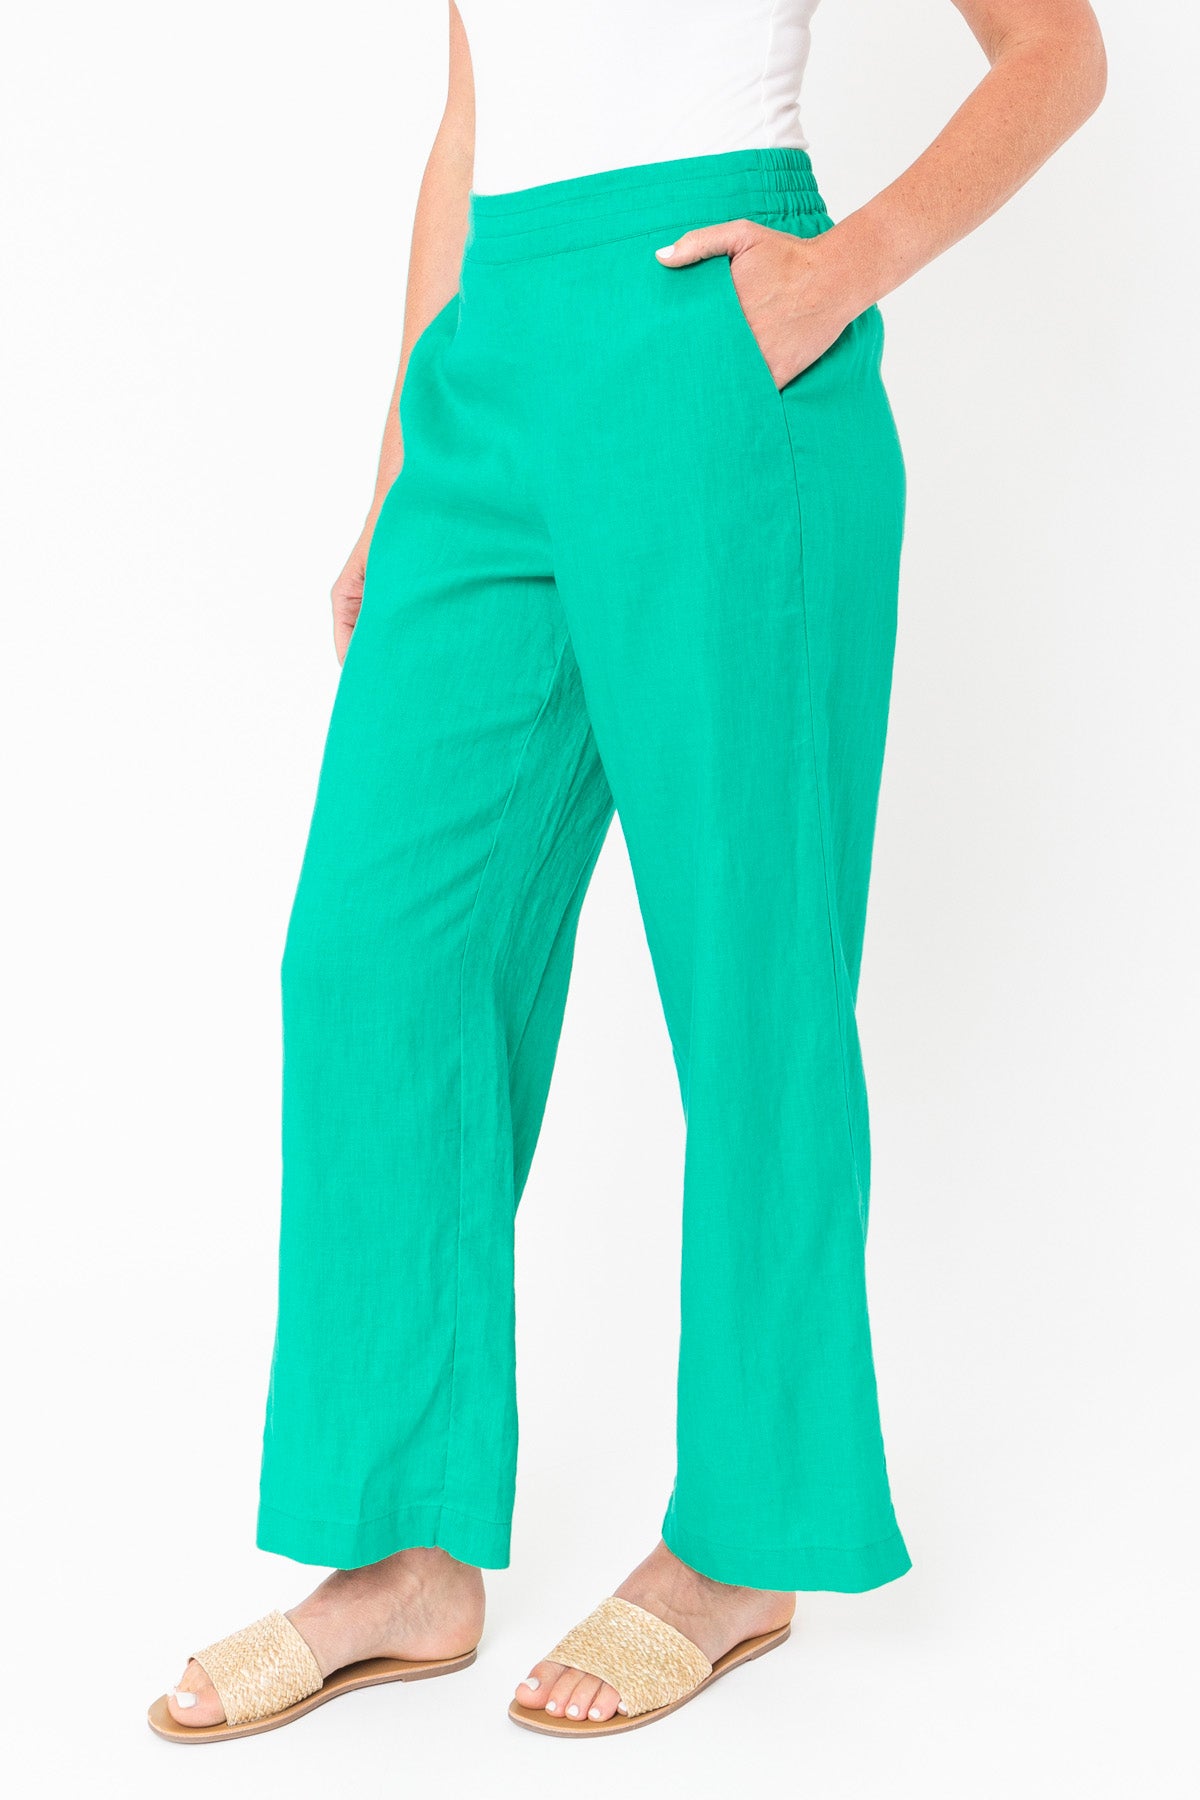 Women's Wide Leg Linen Pants in Emerald Green